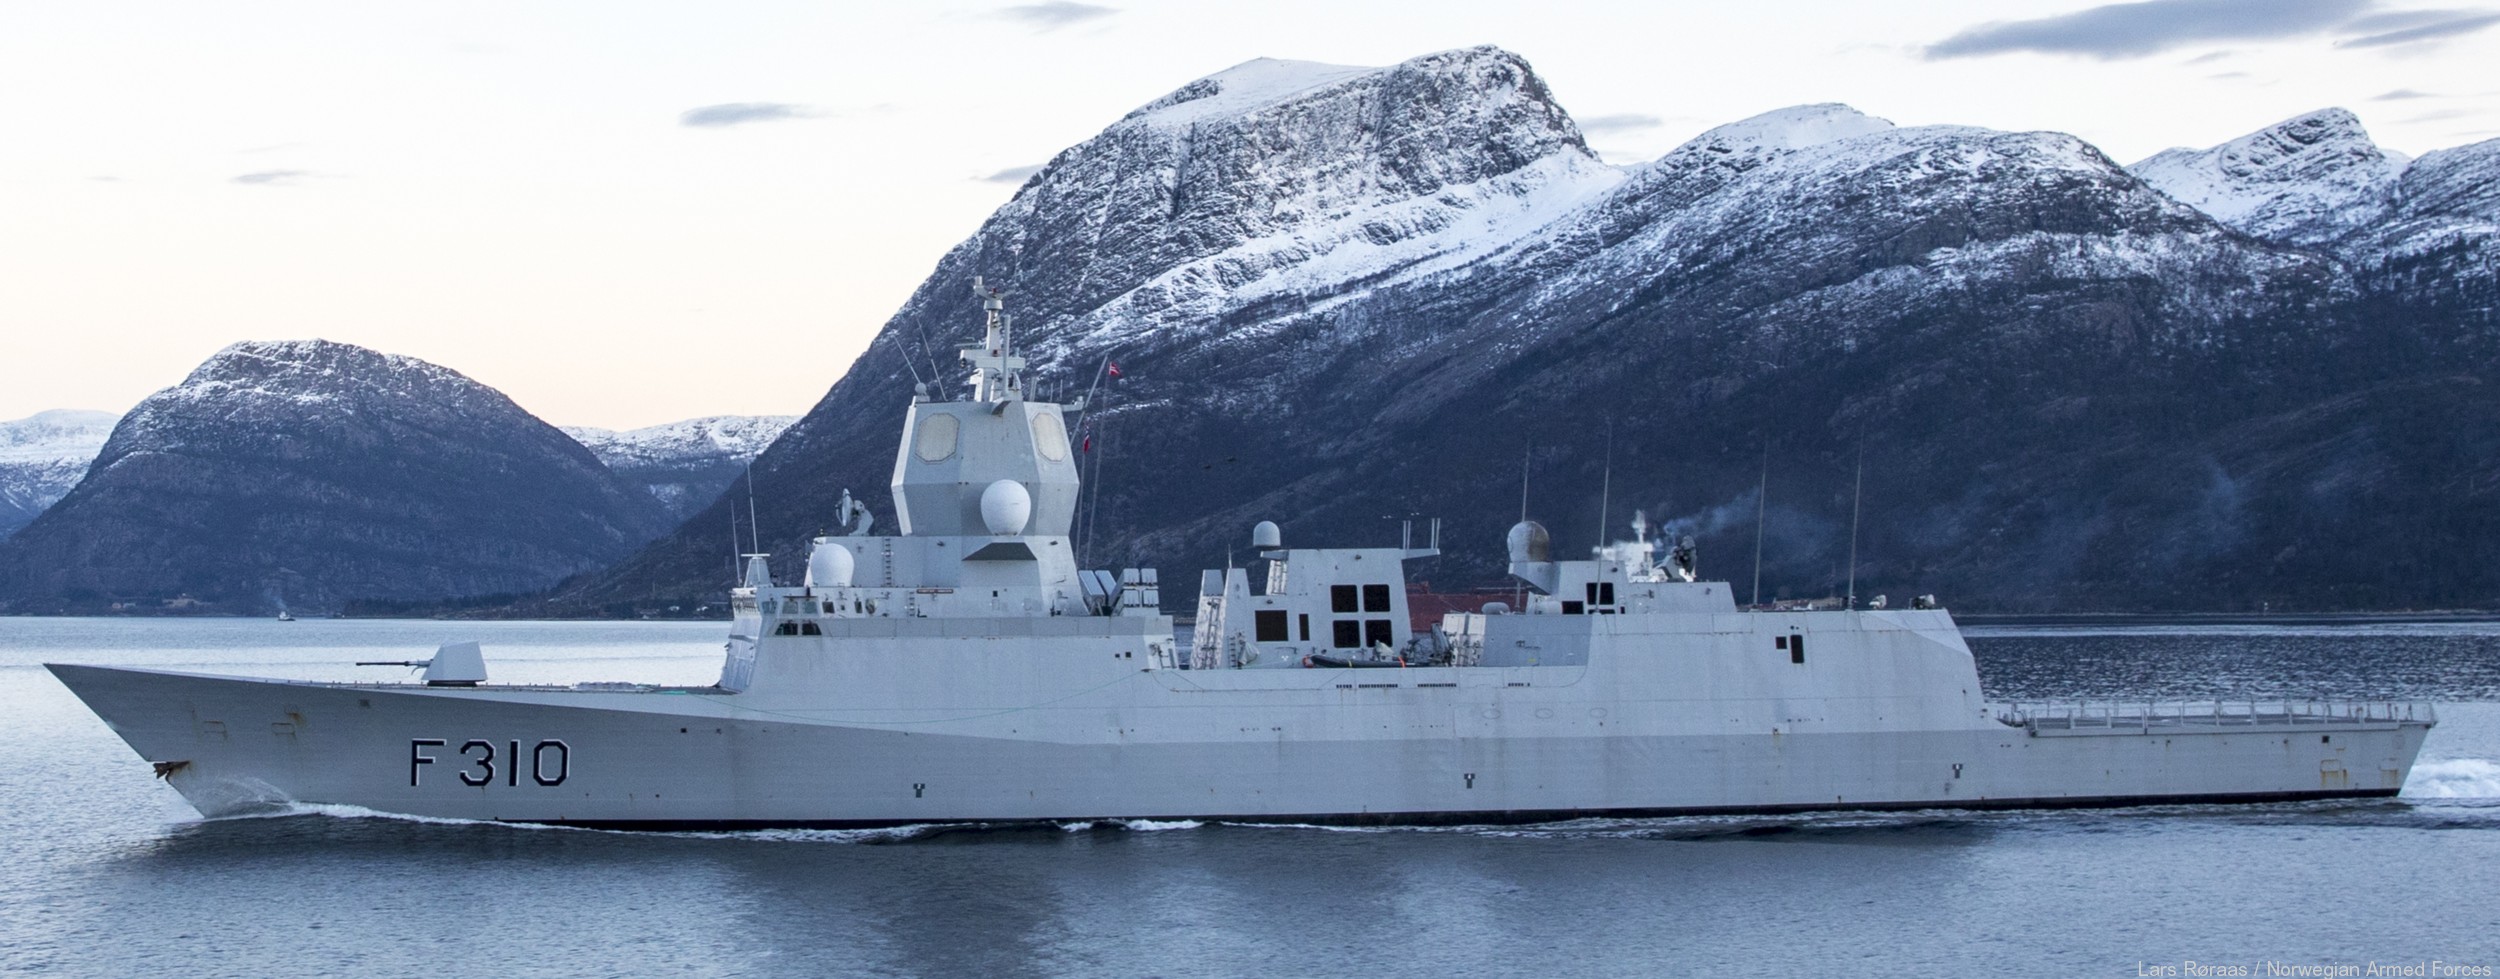 f-310 fridtjof nansen hnoms knm frigate royal norwegian navy sjoforsvaret 14